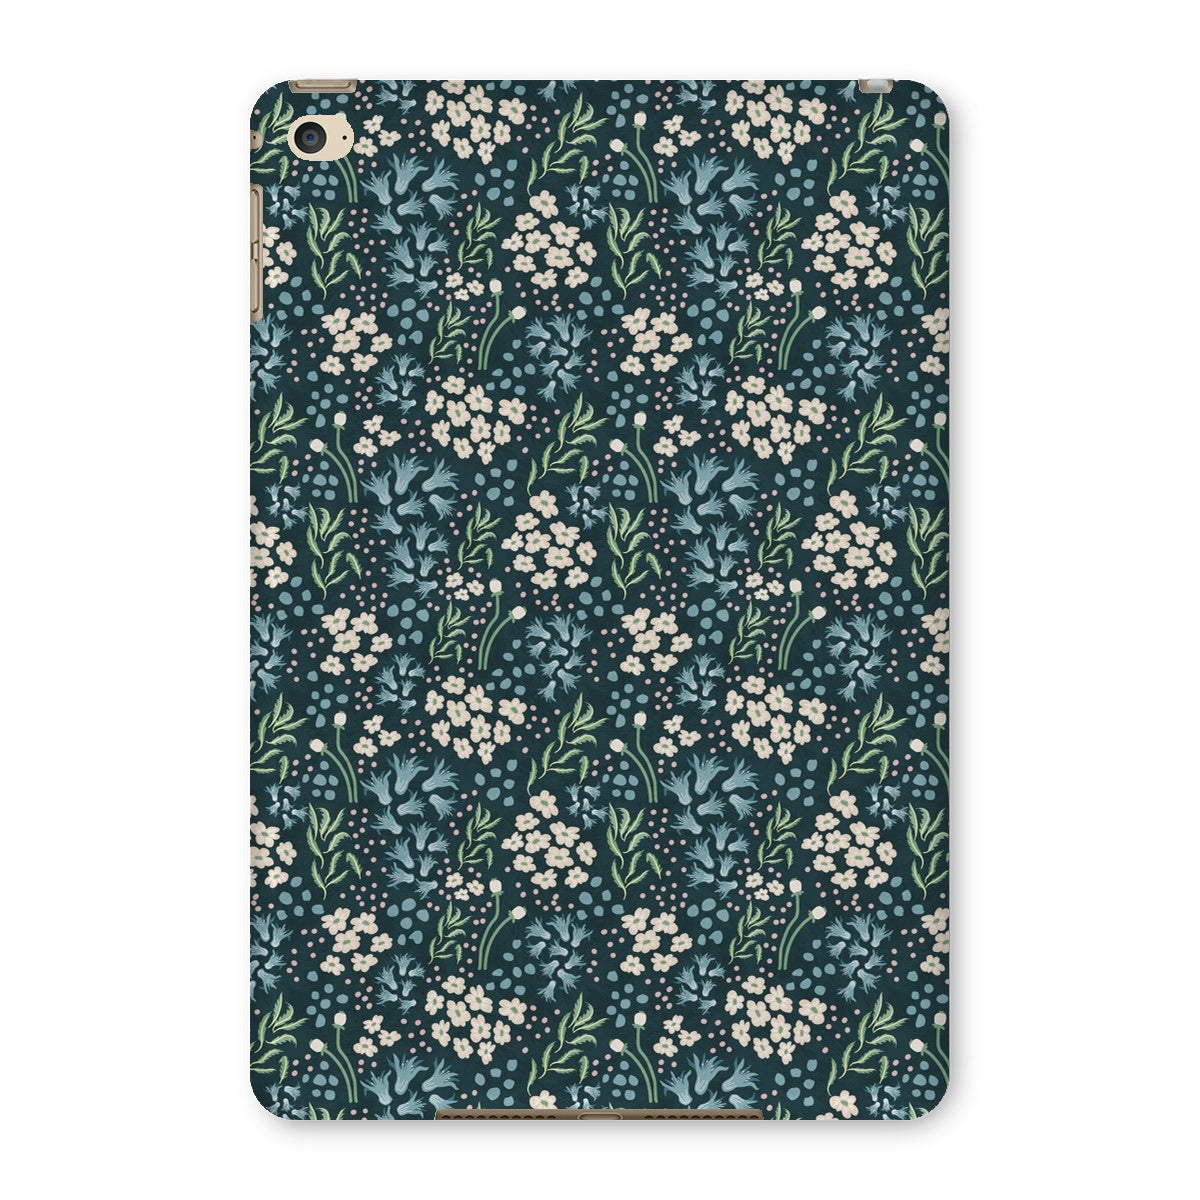 Teal Elegance: Vintage Floral Ditsy Tablet Cases